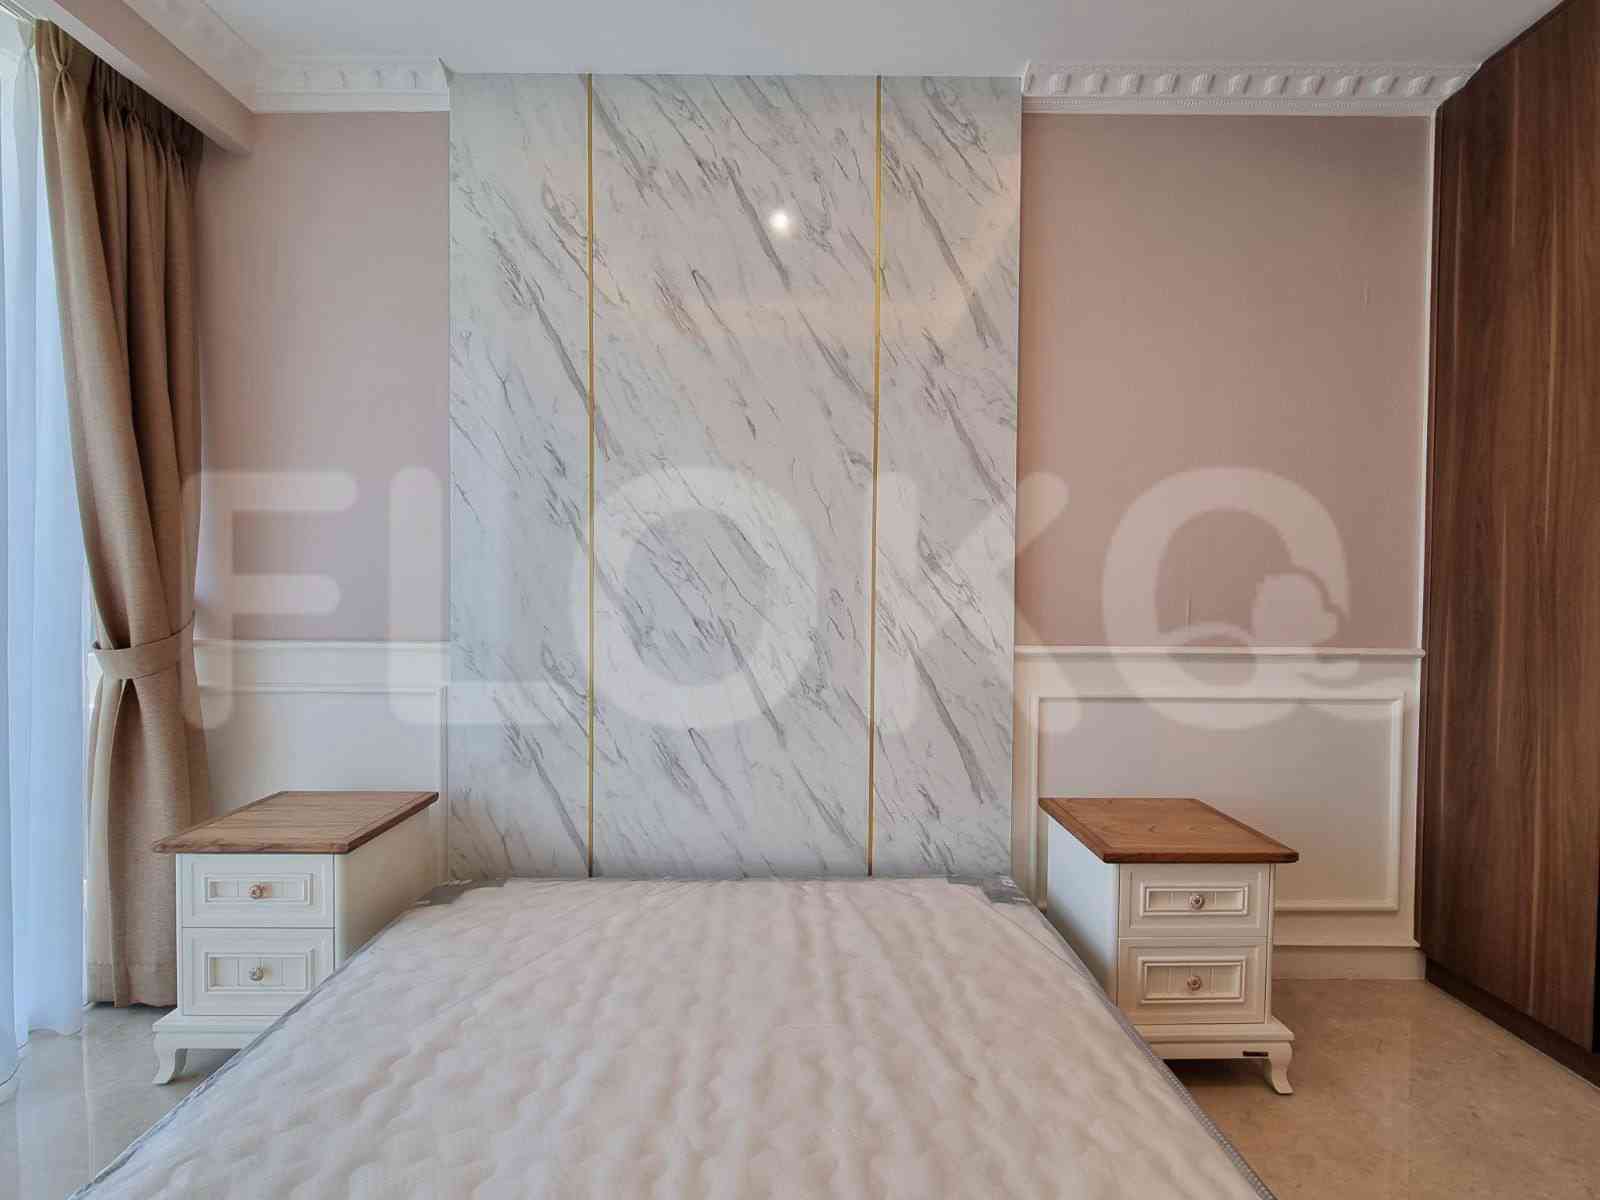 2 Bedroom on 17th Floor for Rent in Pondok Indah Residence - fpo3b2 4